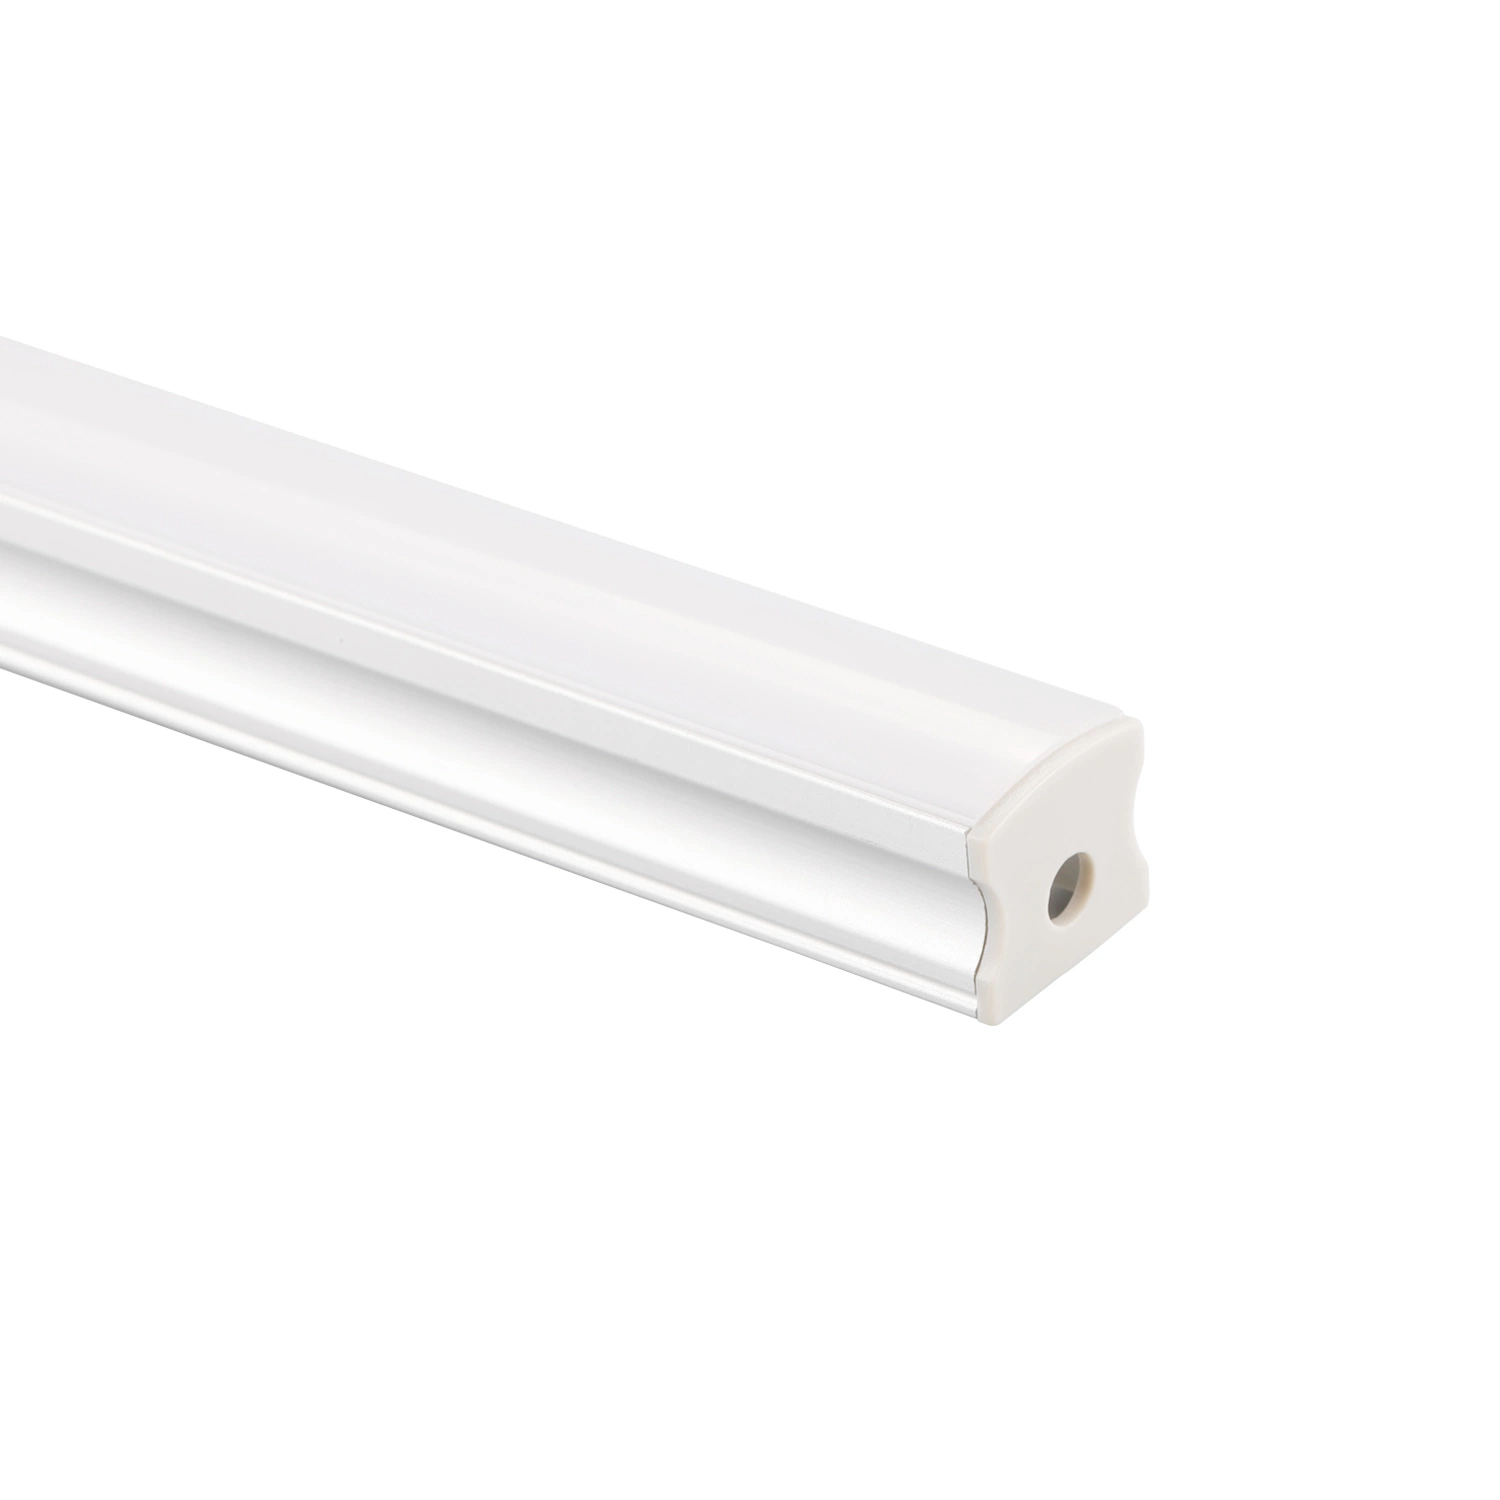 17X15mm قناة ألومنيوم لتركيب الشريط LED على الأرض أو الحائط أو السقف